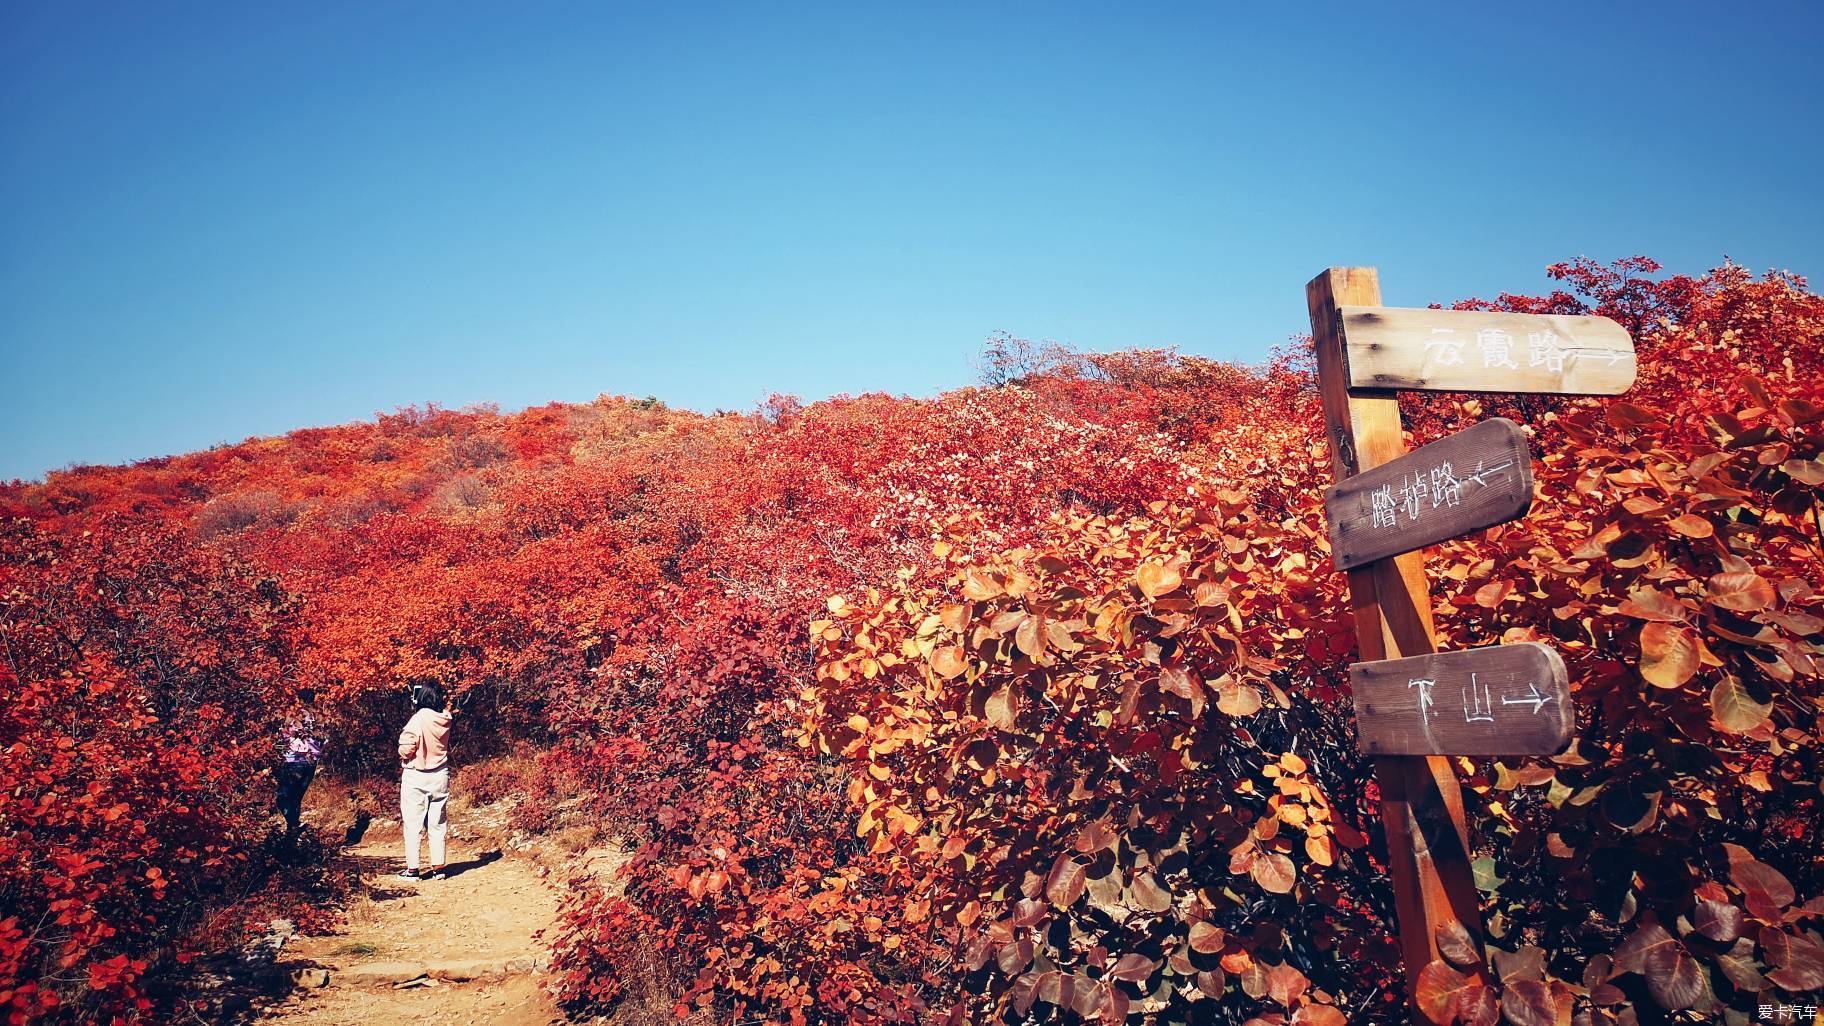 游金沙河佛照山用镜头定格这满山红叶,层林尽染的金秋十月!